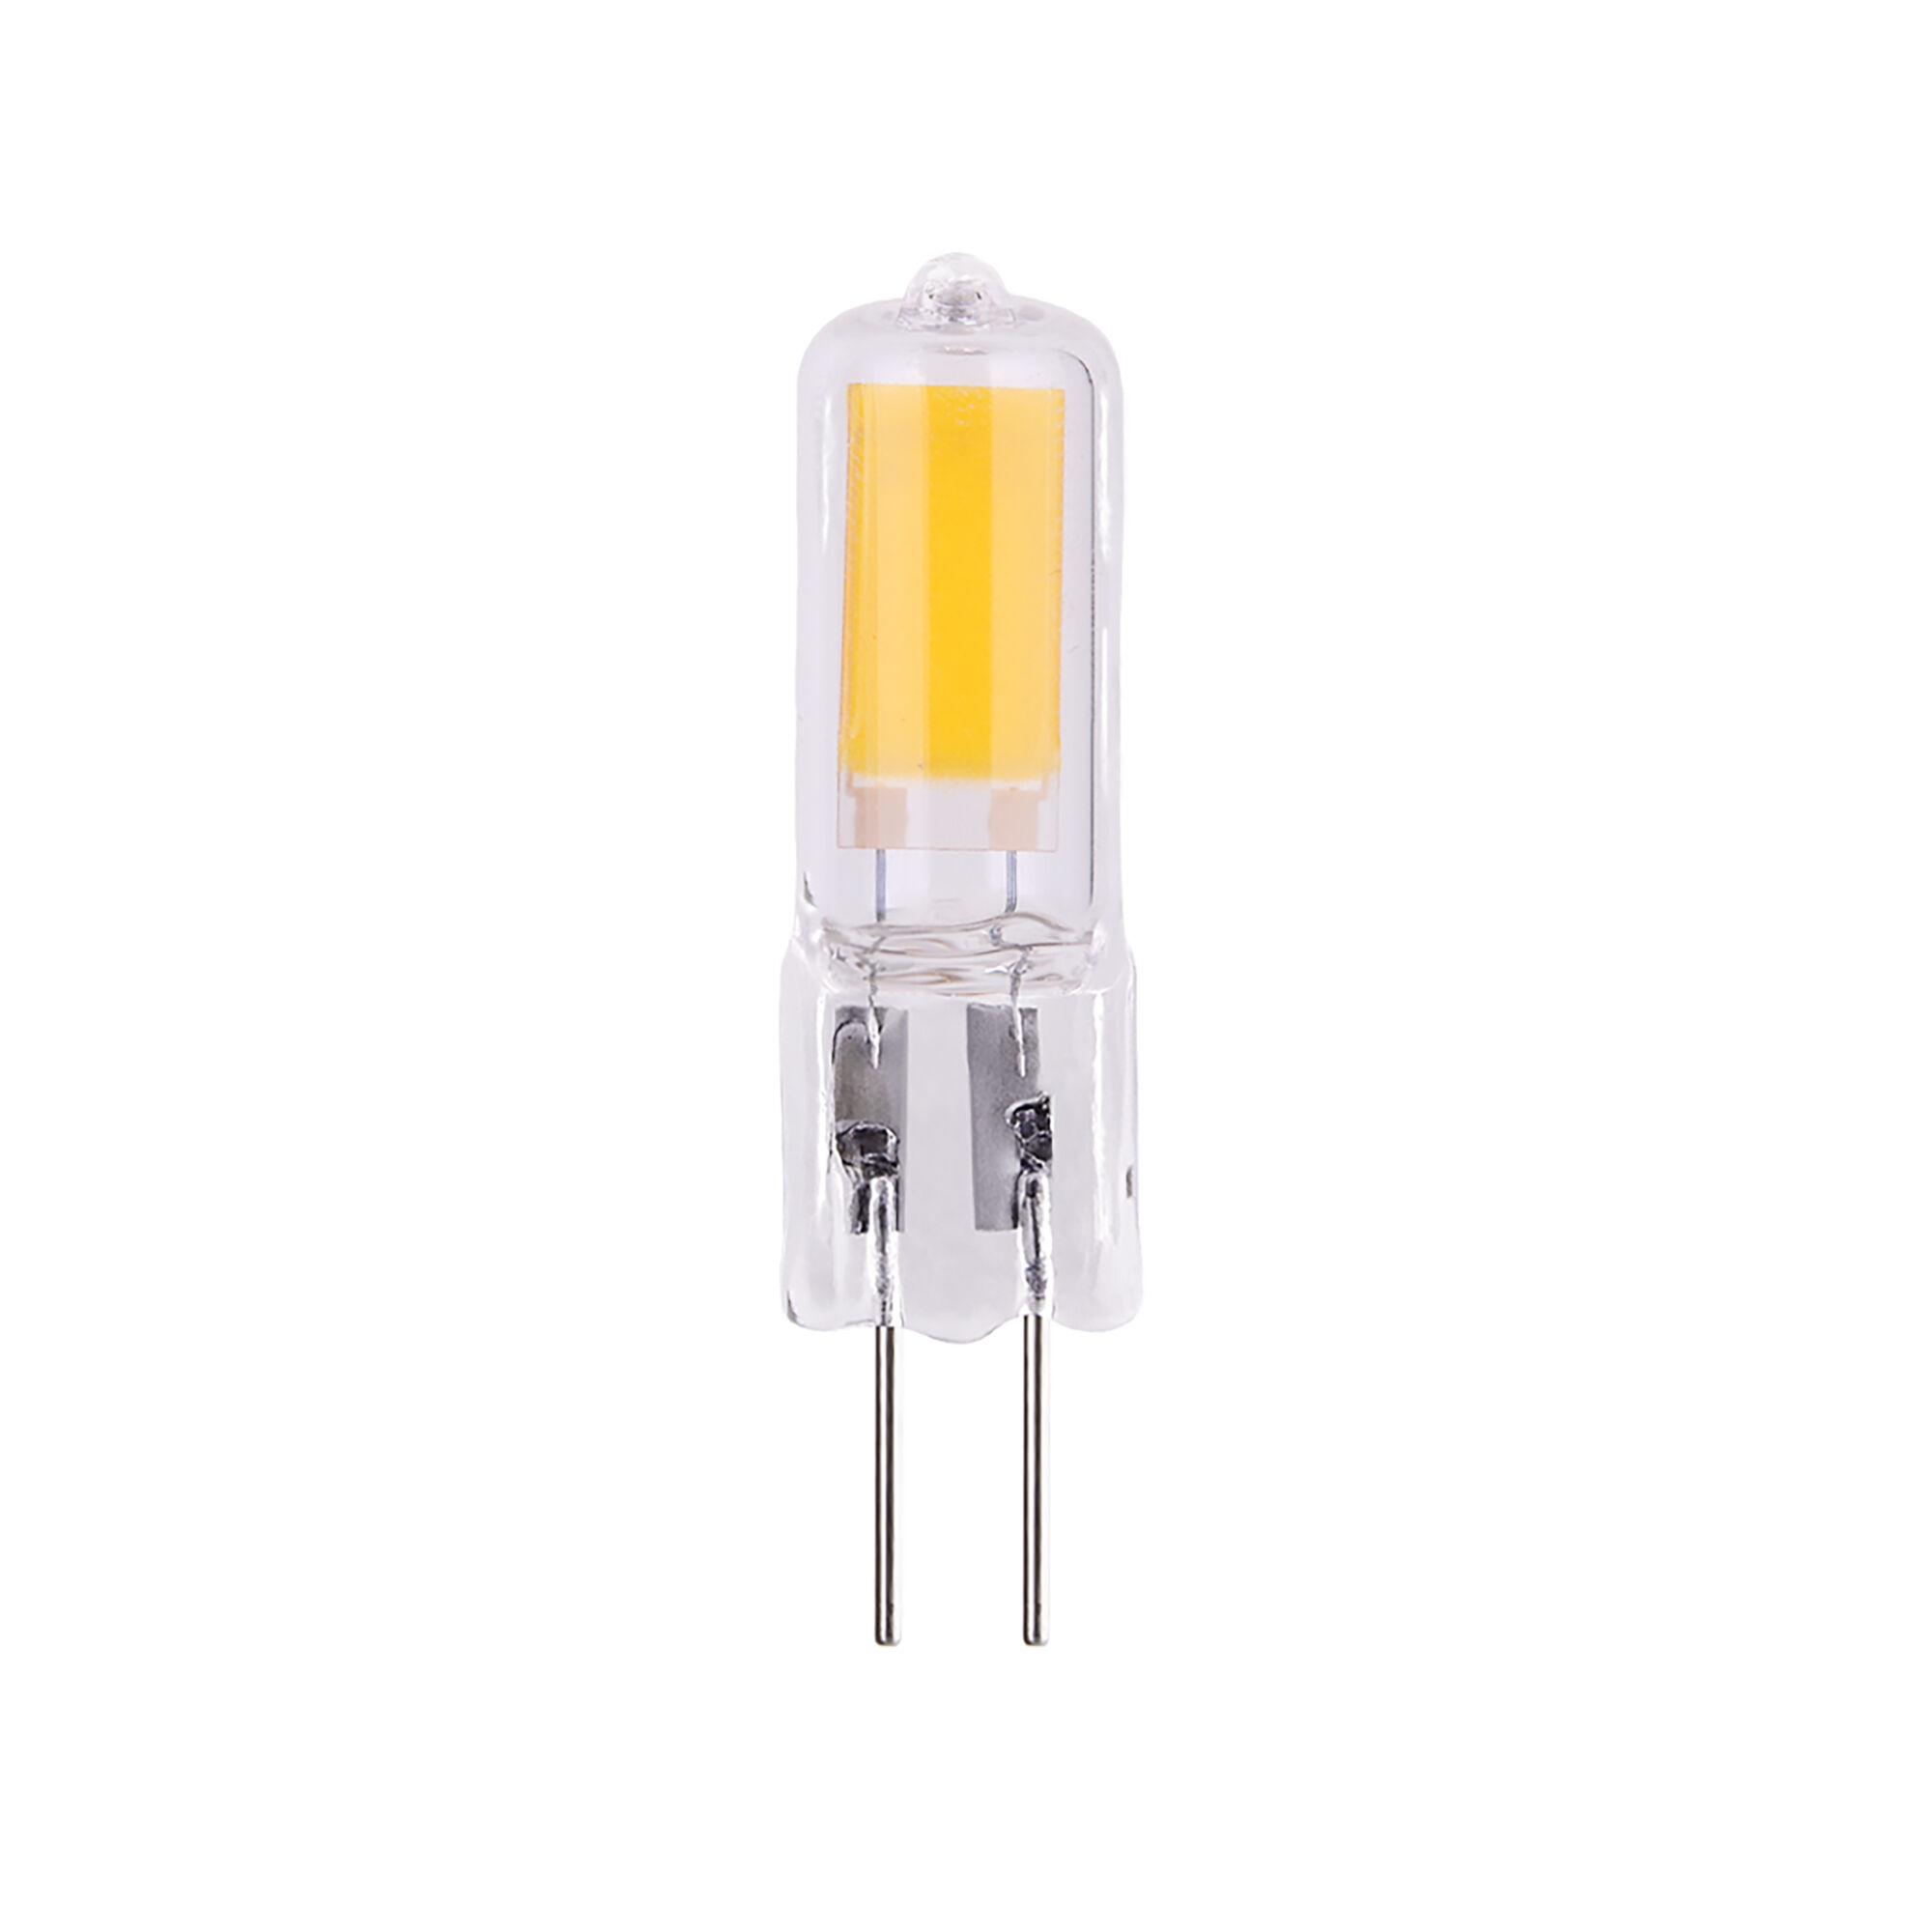 Светодиодная лампа G4 LED 5W 220V 3300K стекло BLG419